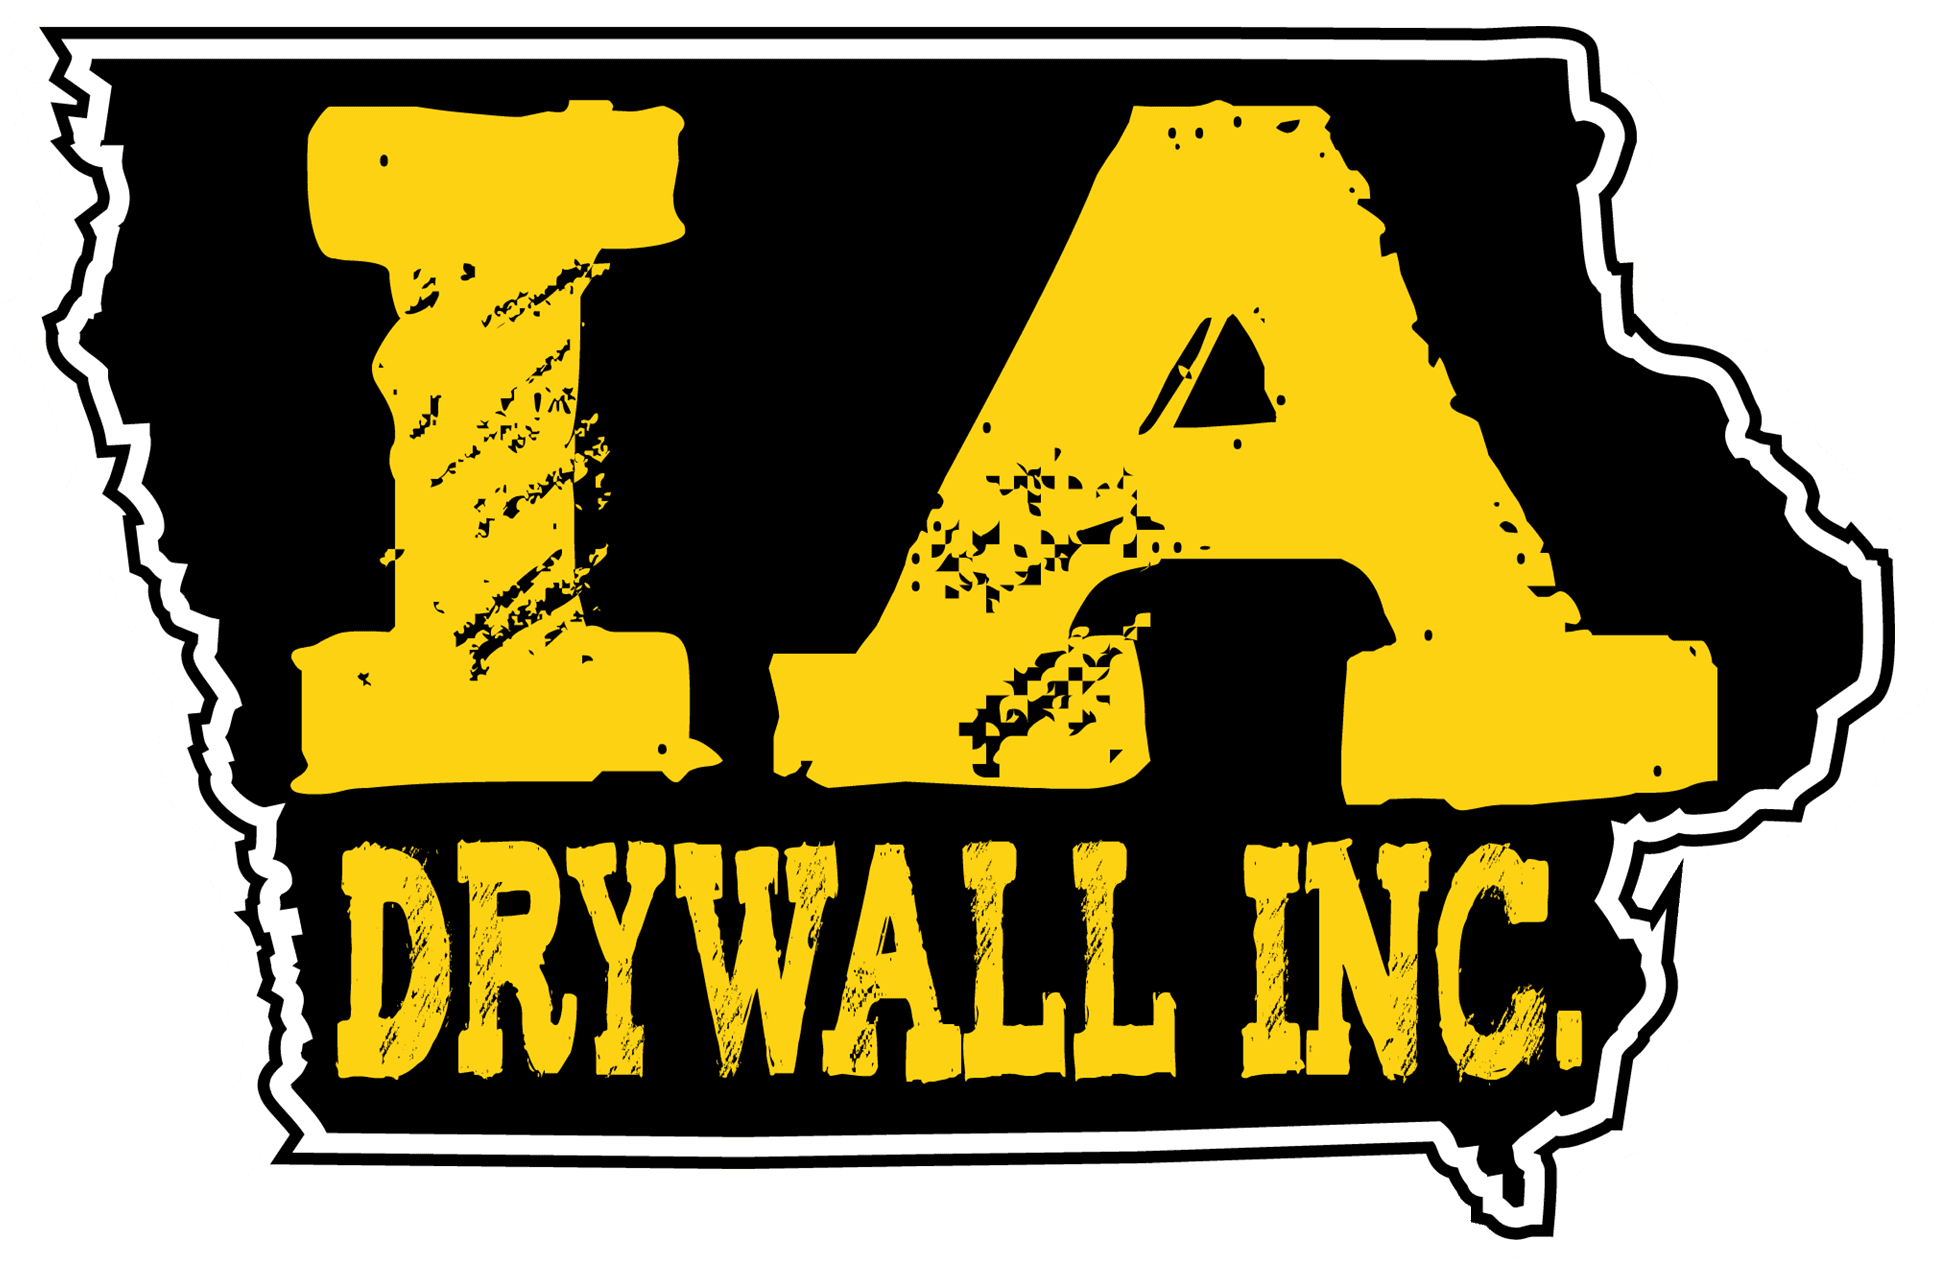 IA Drywall Logo